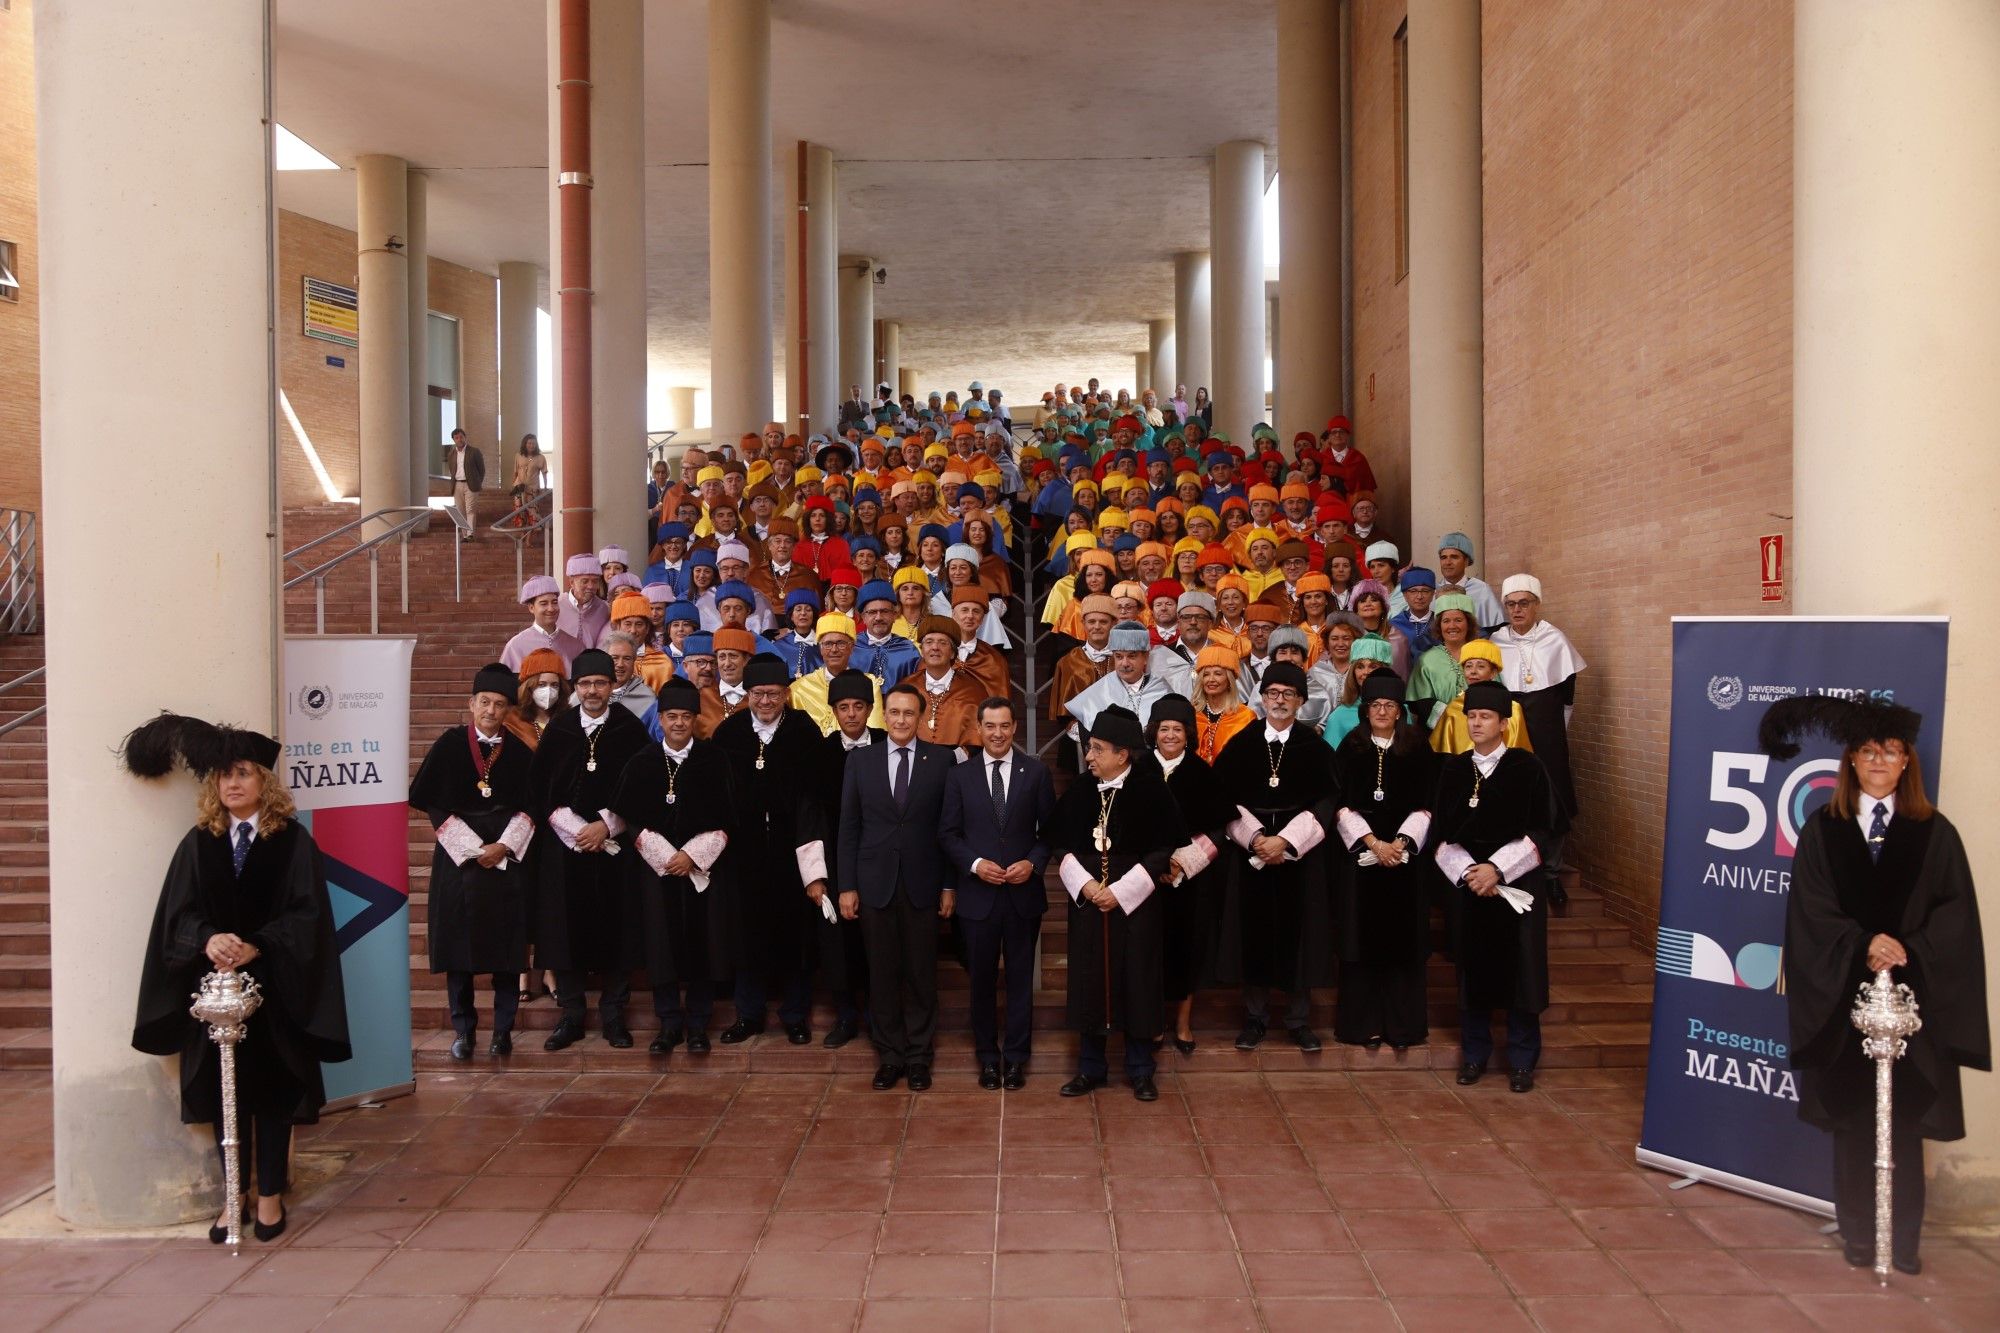 Universidad de Málaga on X: Tras su inauguración, en el hall del